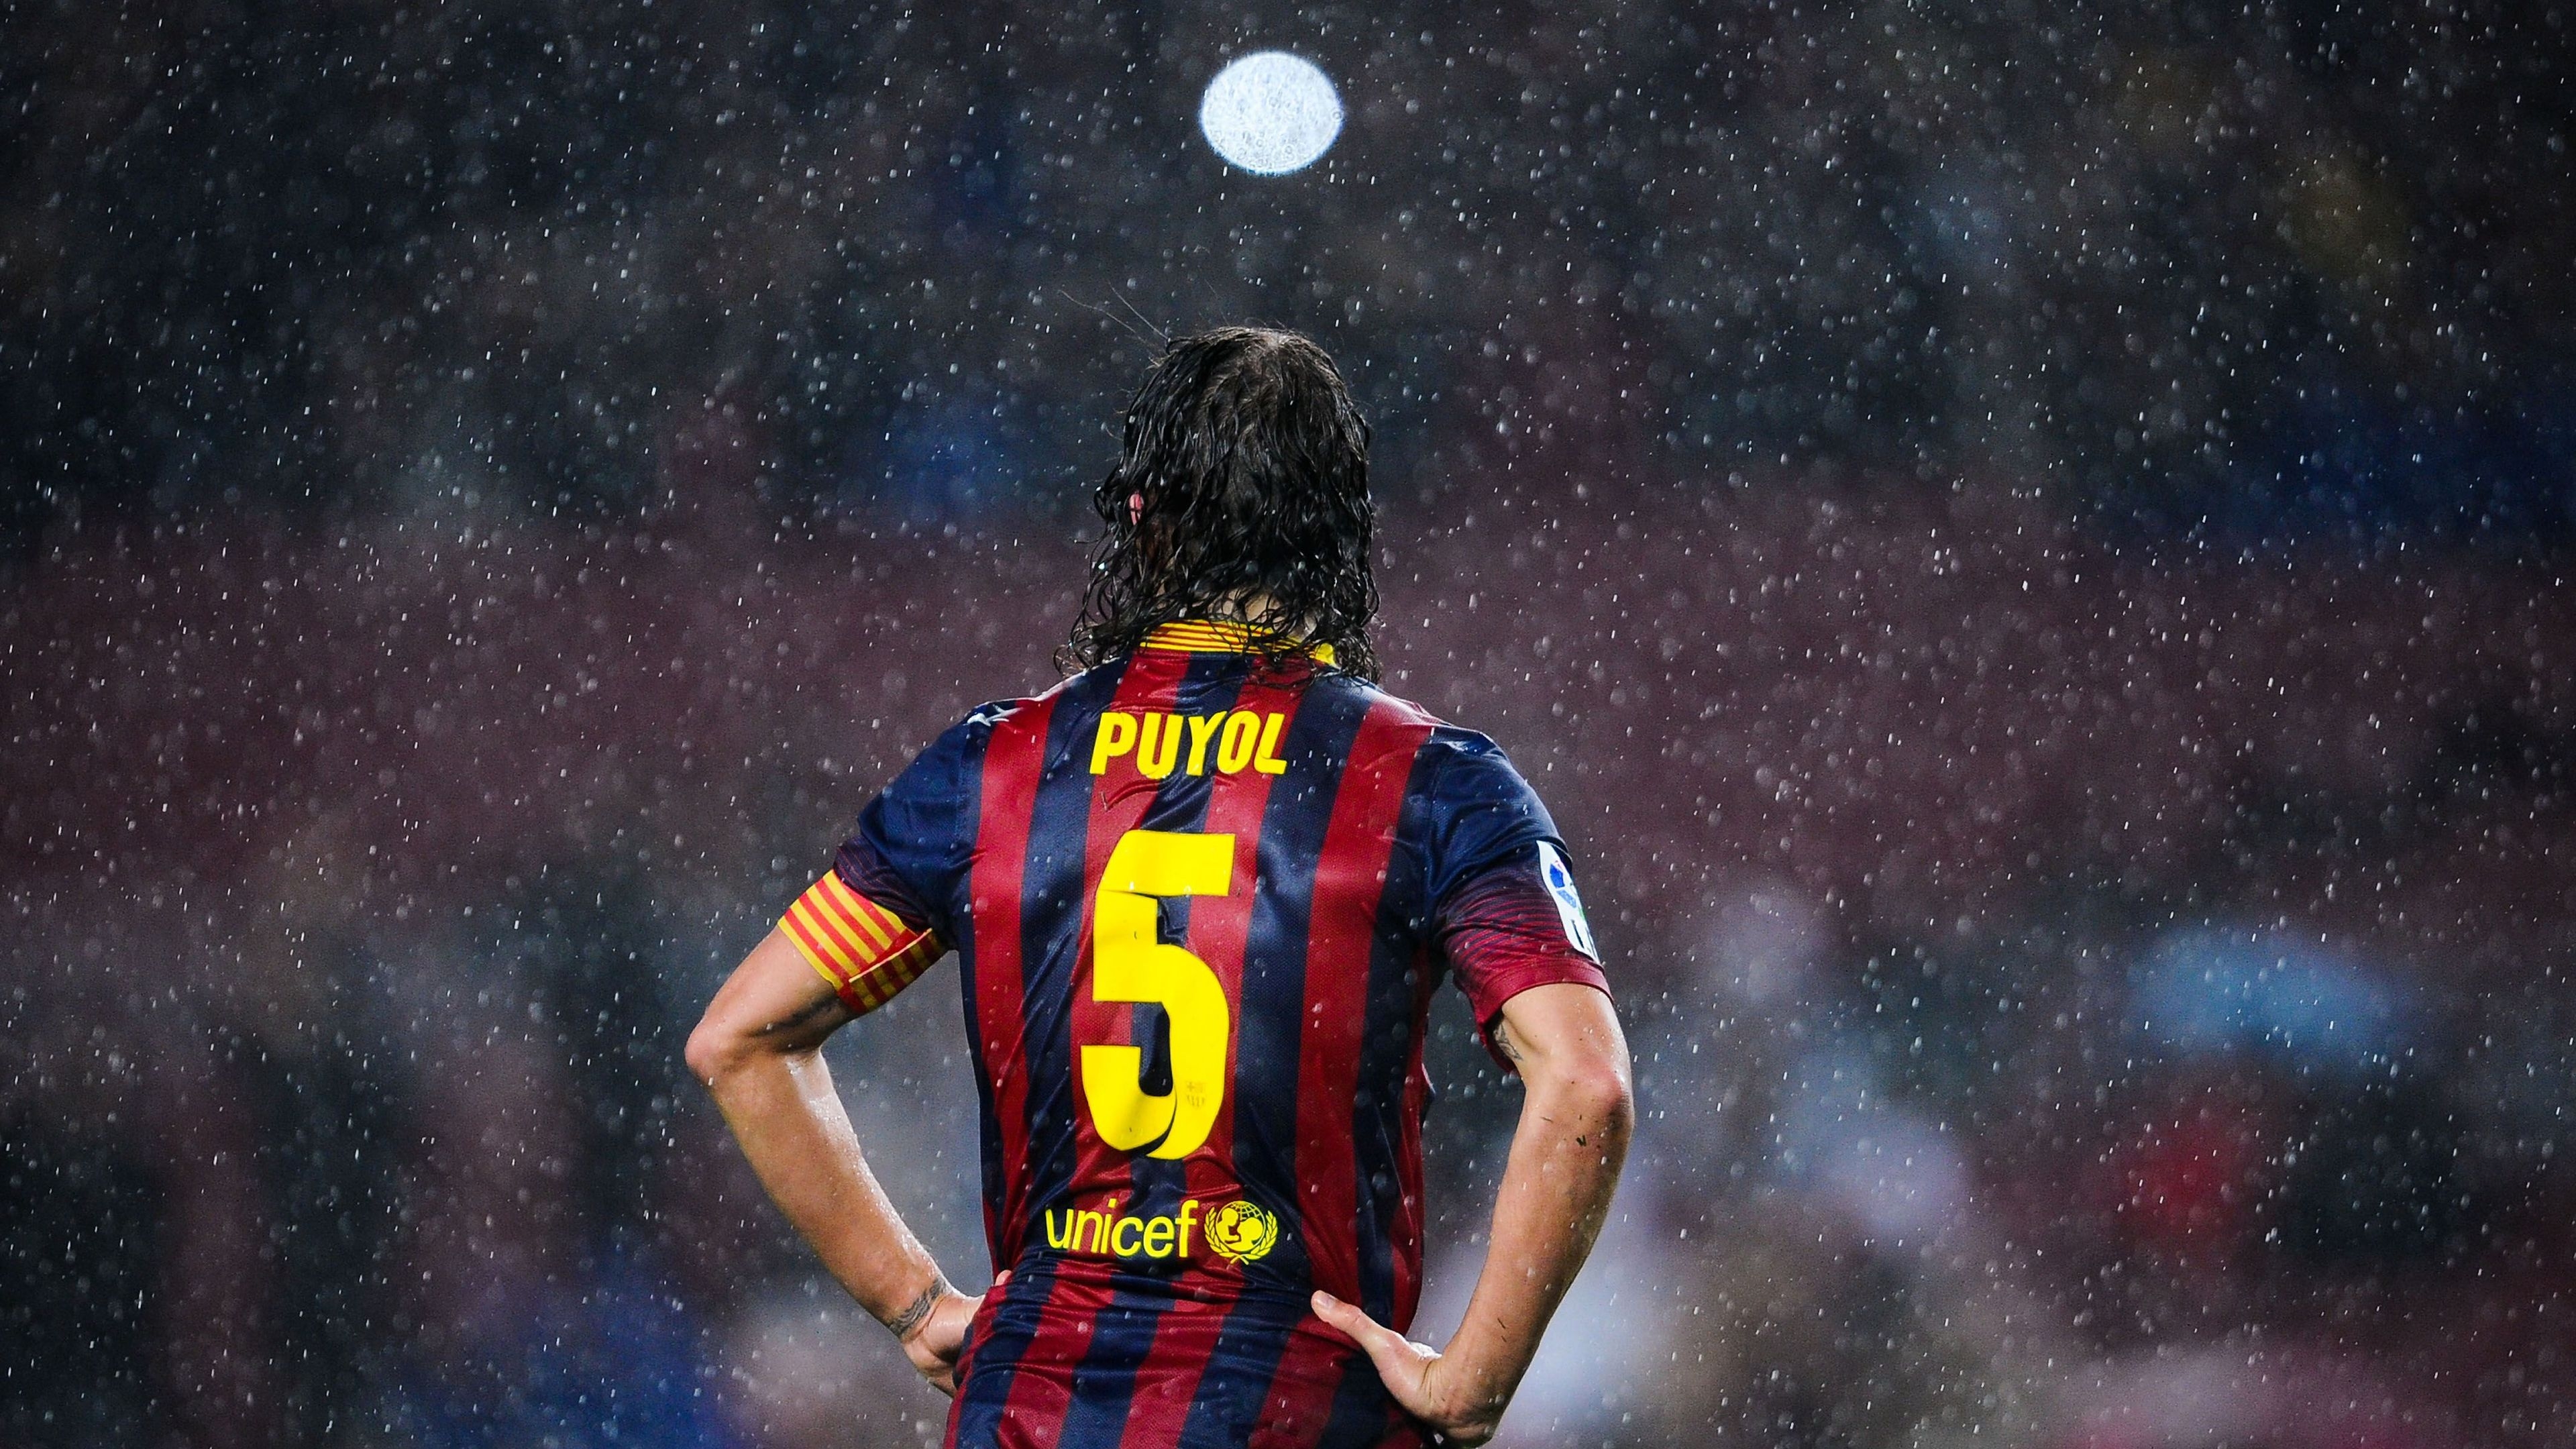 Carles Puyol Rain for 3840 x 2160 Ultra HD resolution